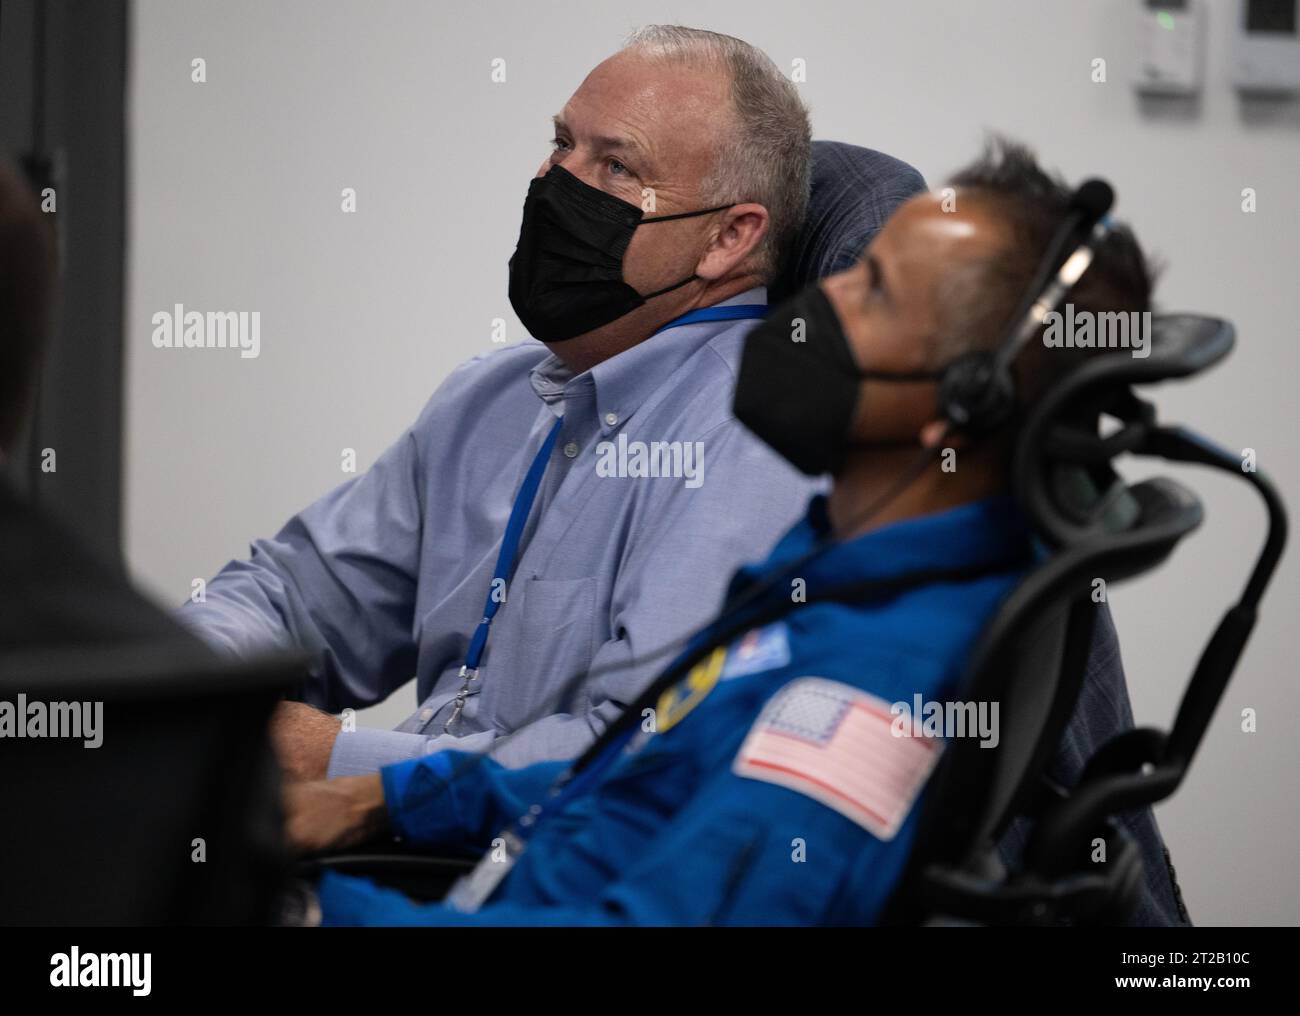 Lancio di SpaceX Crew-7 della NASA. Norm Knight, direttore delle operazioni di volo presso il Johnson Space Center della NASA, e Joe Acaba, capo dell'ufficio astronauti, sono visti mentre monitorano il conto alla rovescia del lancio di un razzo SpaceX Falcon 9 che trasporta la navicella Dragon della compagnia nella missione SpaceX Crew-7 della NASA con l'astronauta Jasmin Moghbeli, l'astronauta ESA (Agenzia spaziale europea) Andreas Mogensen, l'astronauta Japan Aerospace Exploration Agency (JAXA) Satoshi Furukawa e il cosmonauta Roscosmos Konstantin Borisov a bordo, sabato 26 agosto 2023, nel Launch and Landing Control Center di SpaceX a HangerX Foto Stock